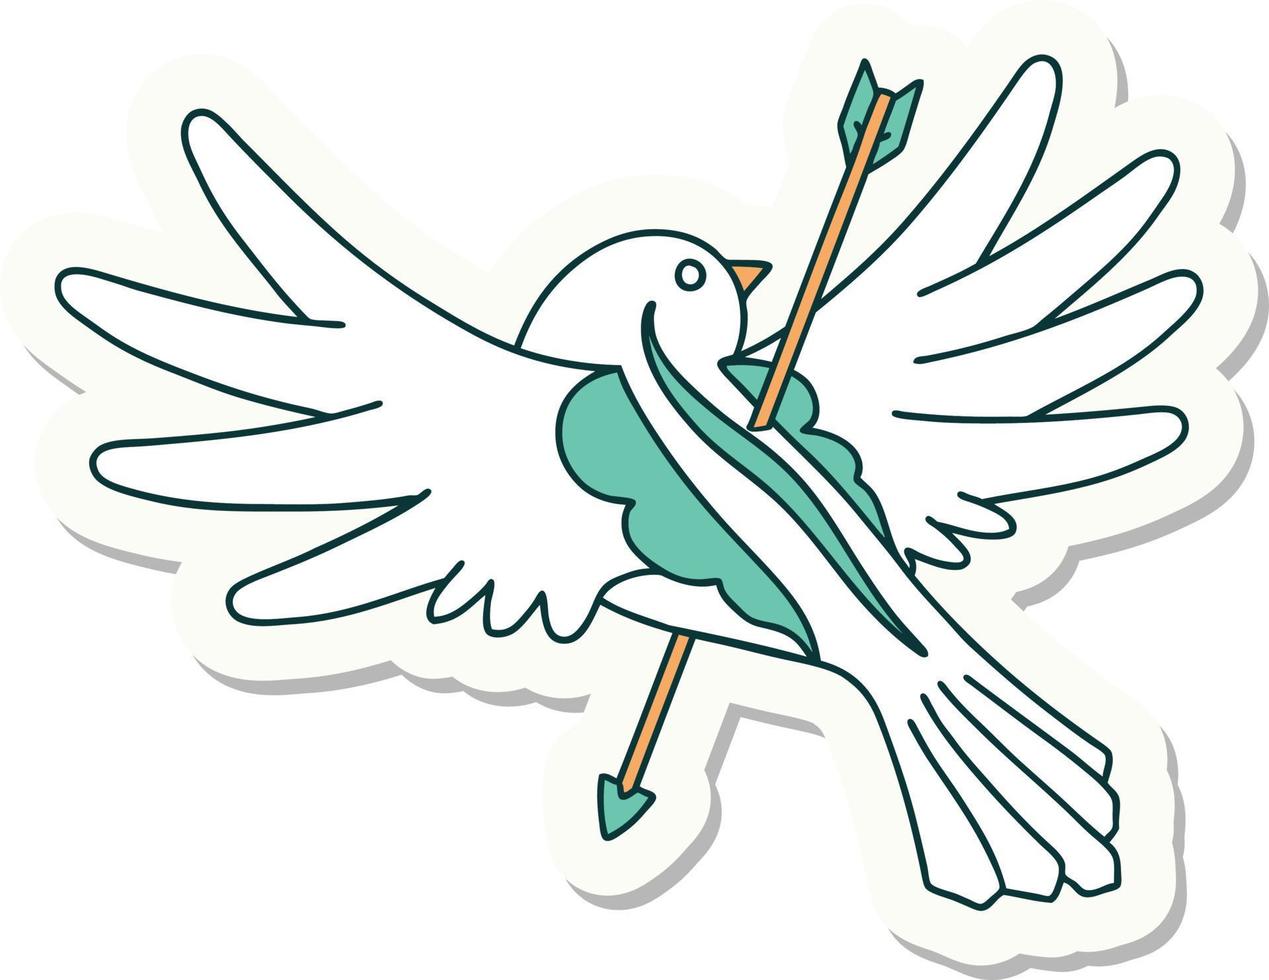 adesivo de tatuagem em estilo tradicional de uma pomba perfurada com flecha vetor